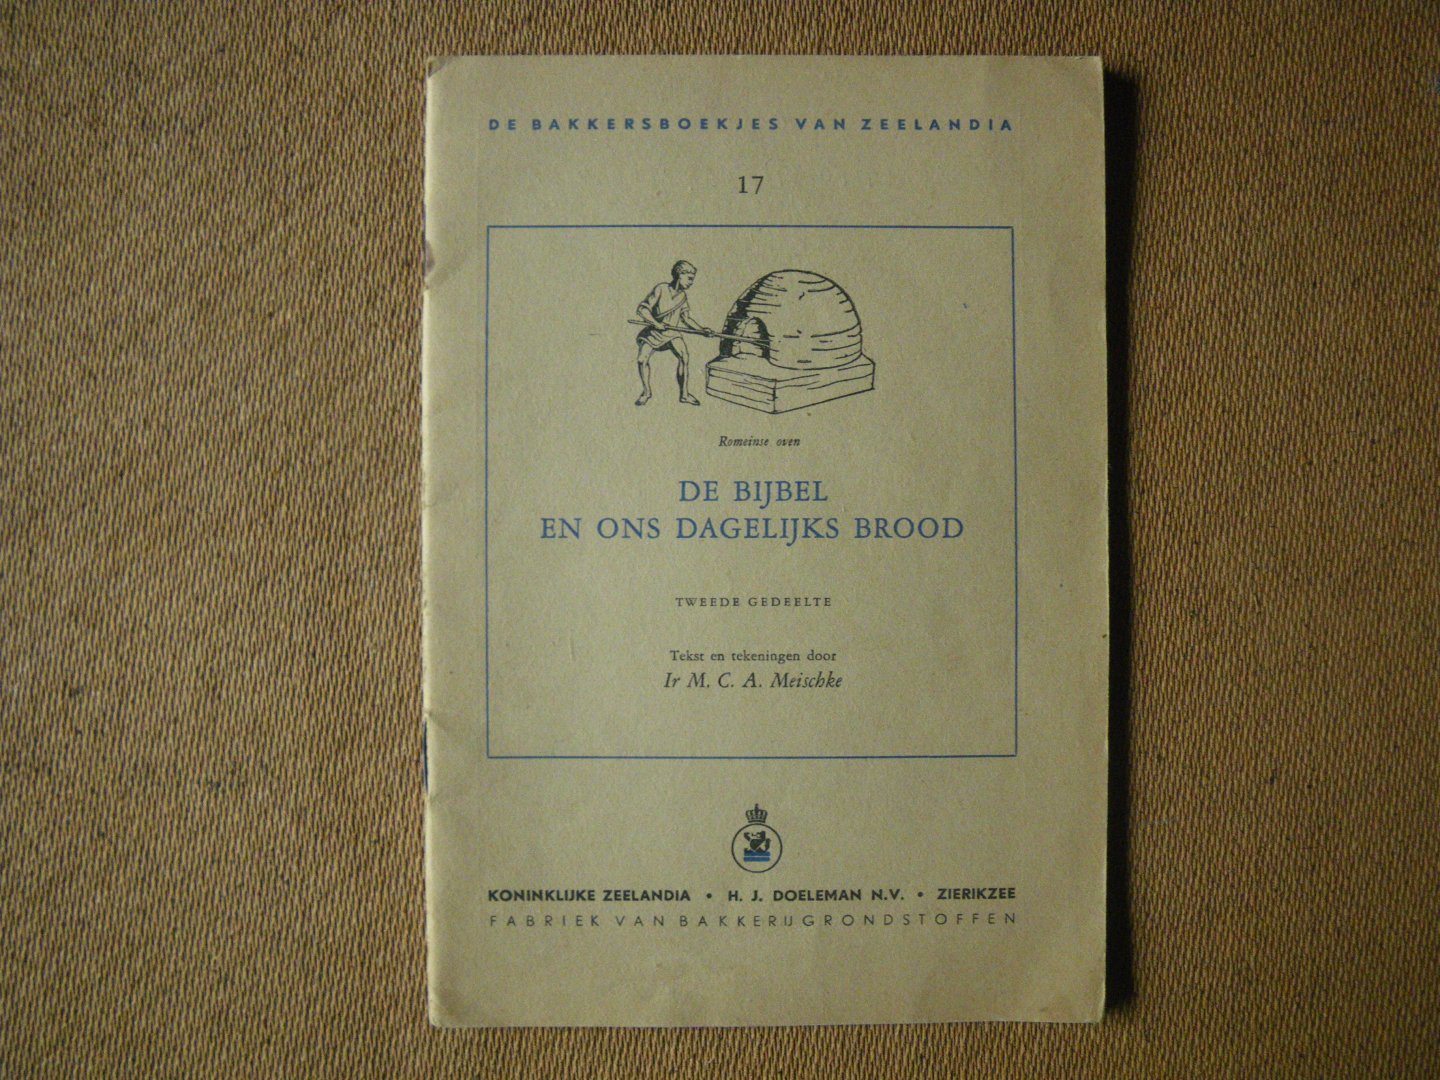 Meischke M.C.A. Ir - De Bijbel en ons dagelijks brood - de bakkersboekjes van Zeelandia tweede gedeelte no. 17-